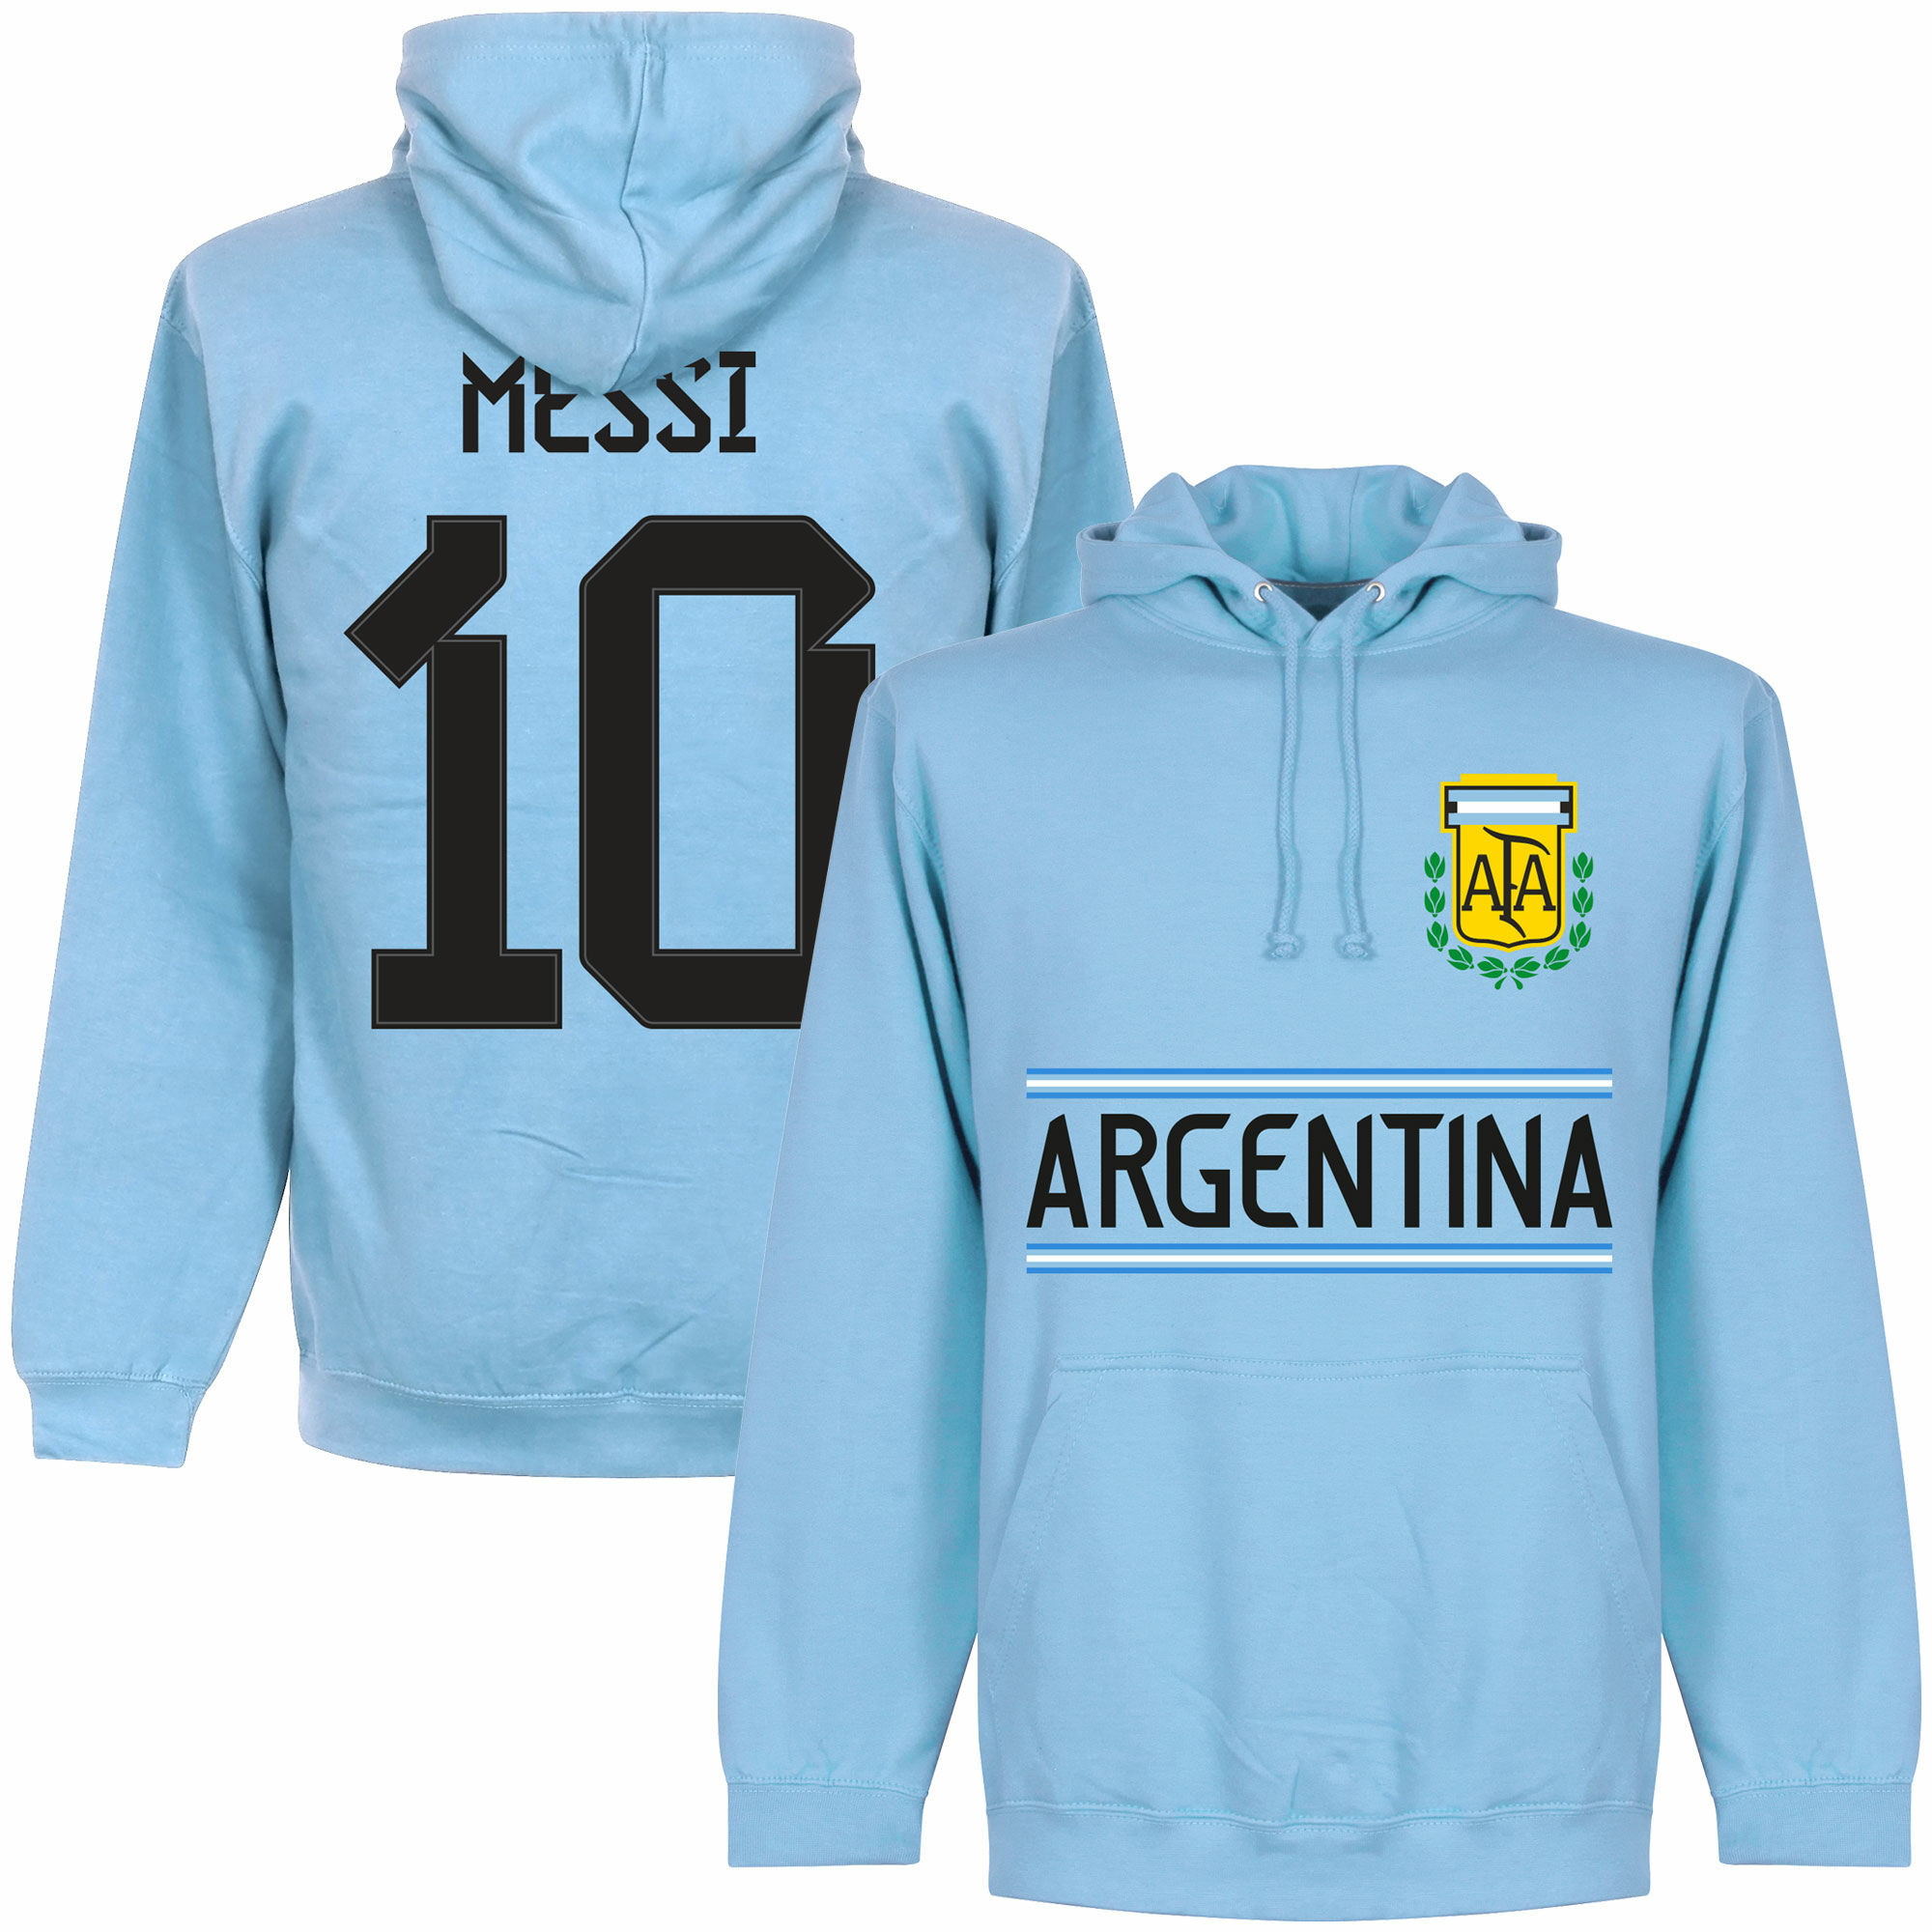 Argentina - Mikina s kapucí dětská - modrá, číslo 10, Lionel Messi